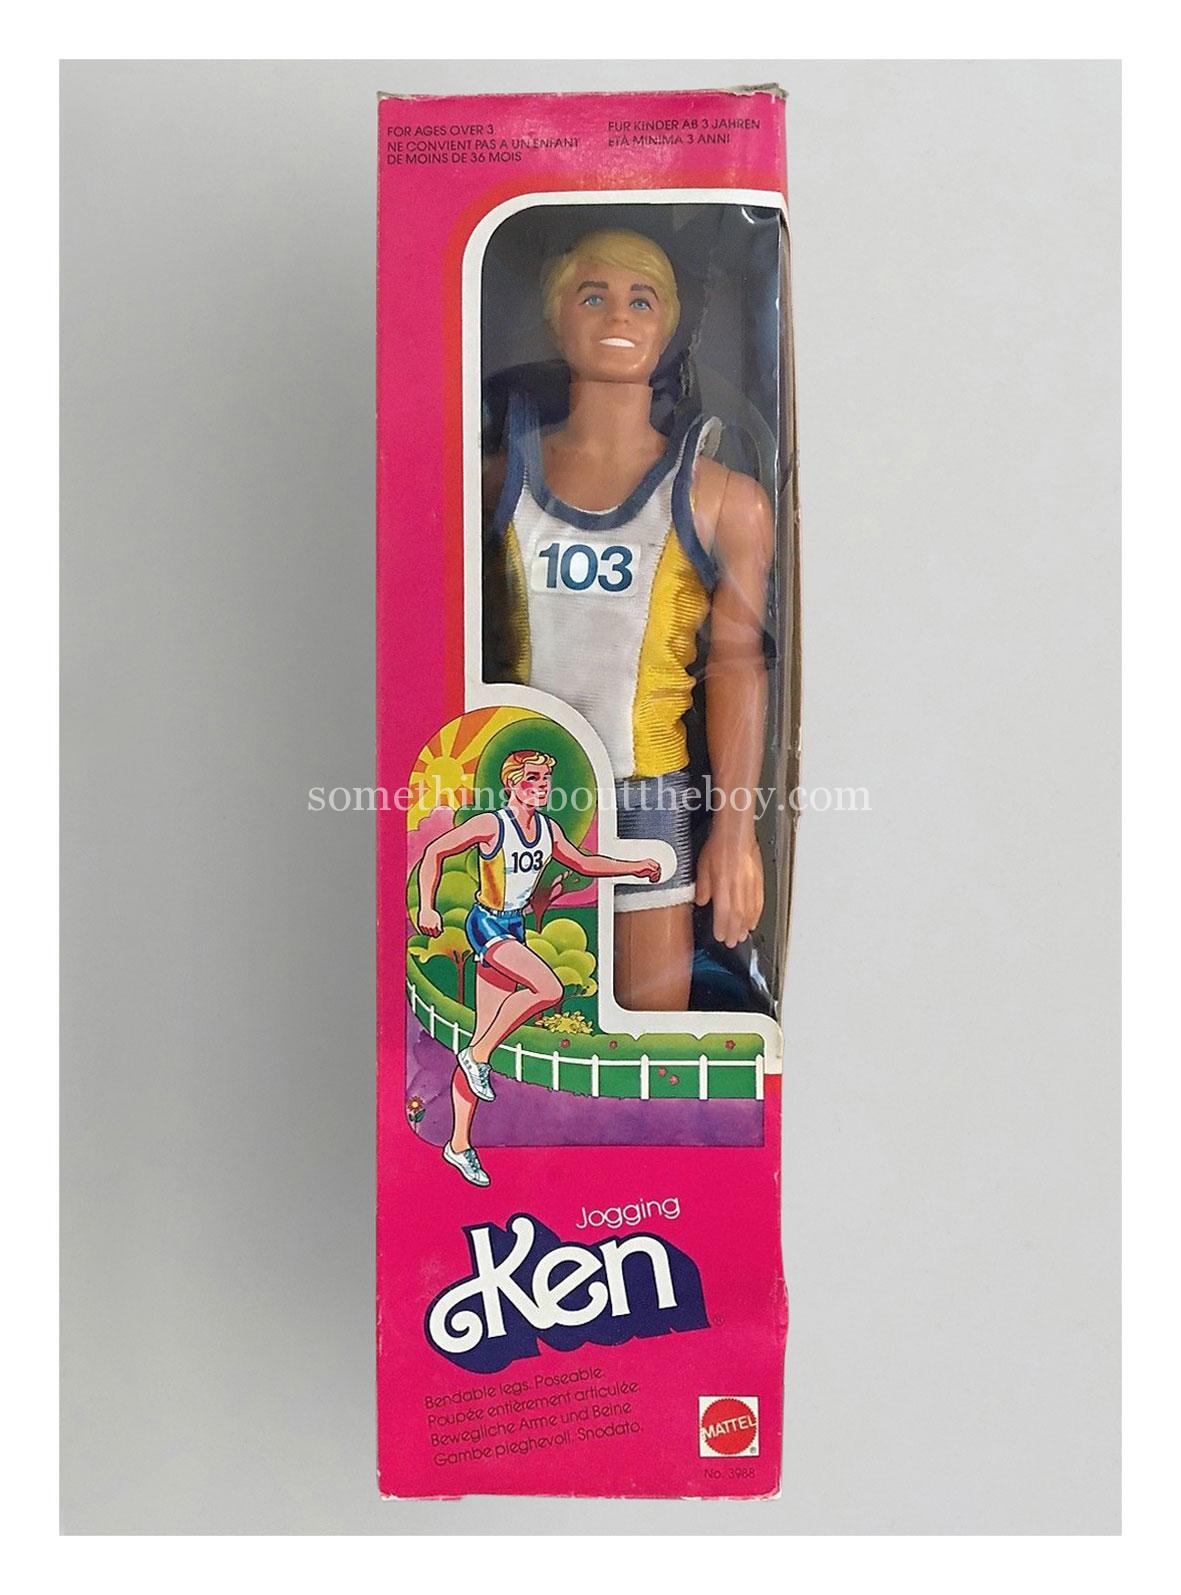 1982 #3988 Jogging Ken (European version)